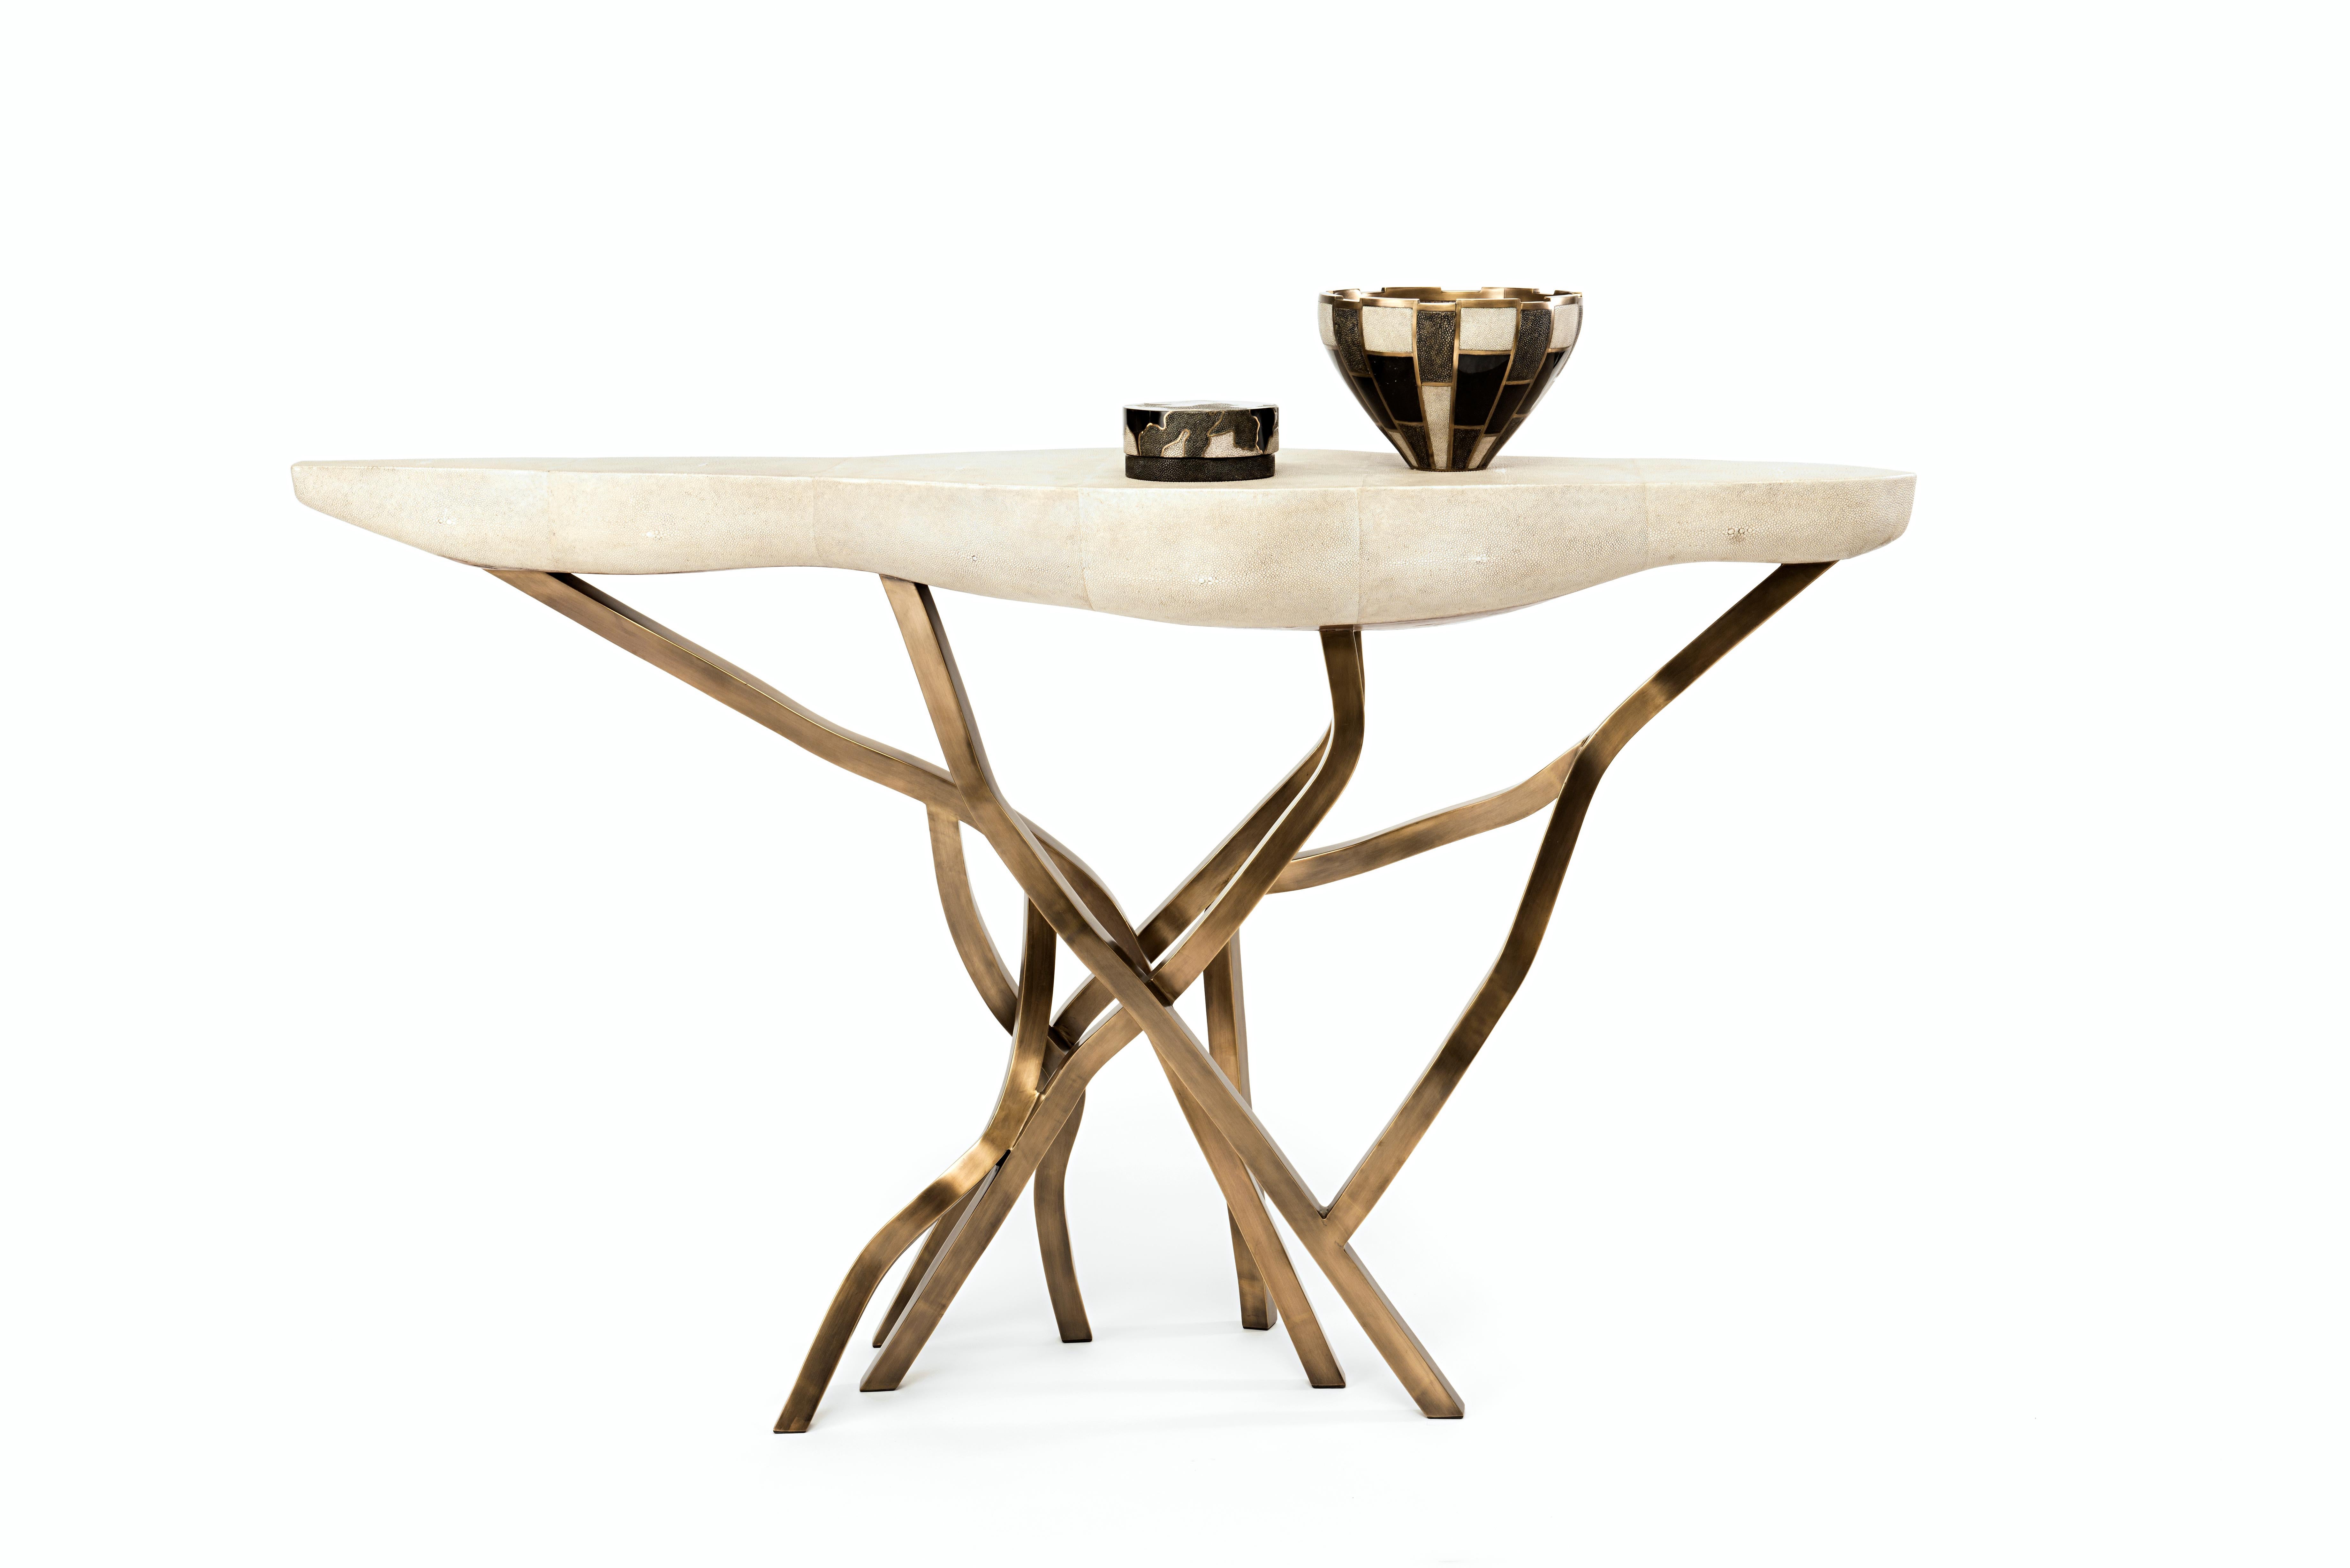 La table console Acacia constitue une pièce d'apparat spectaculaire dans n'importe quel espace. Le plateau de forme amorphe est en crème et les pieds de forme organique sont en laiton bronze-patine. Disponible également en noir, voir les images à la